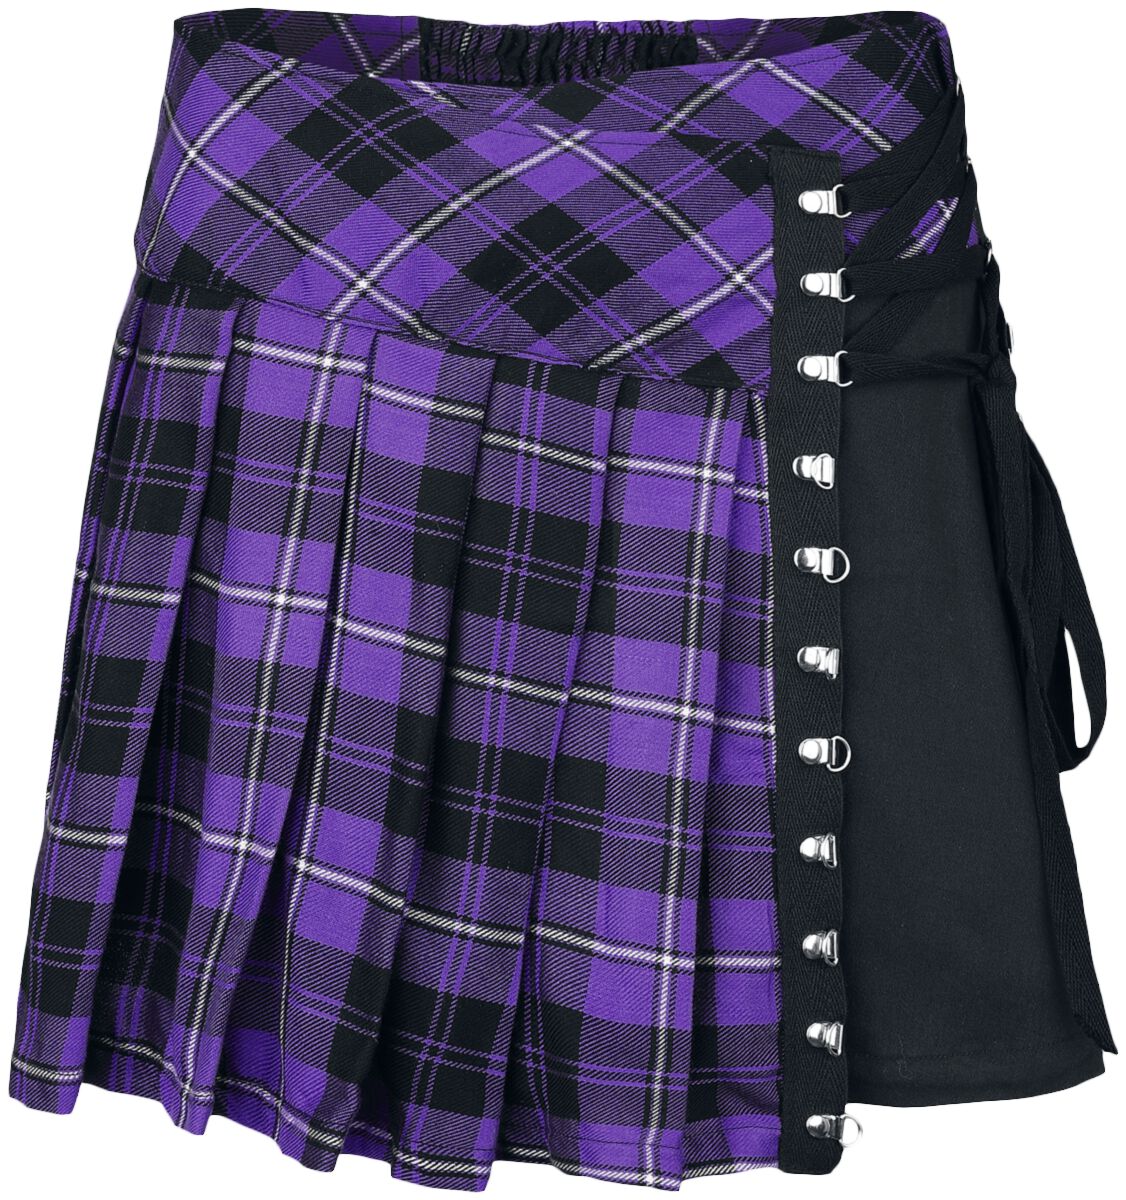 Chemical Black Hybrid Skirt Kurzer Rock lila schwarz in 4XL